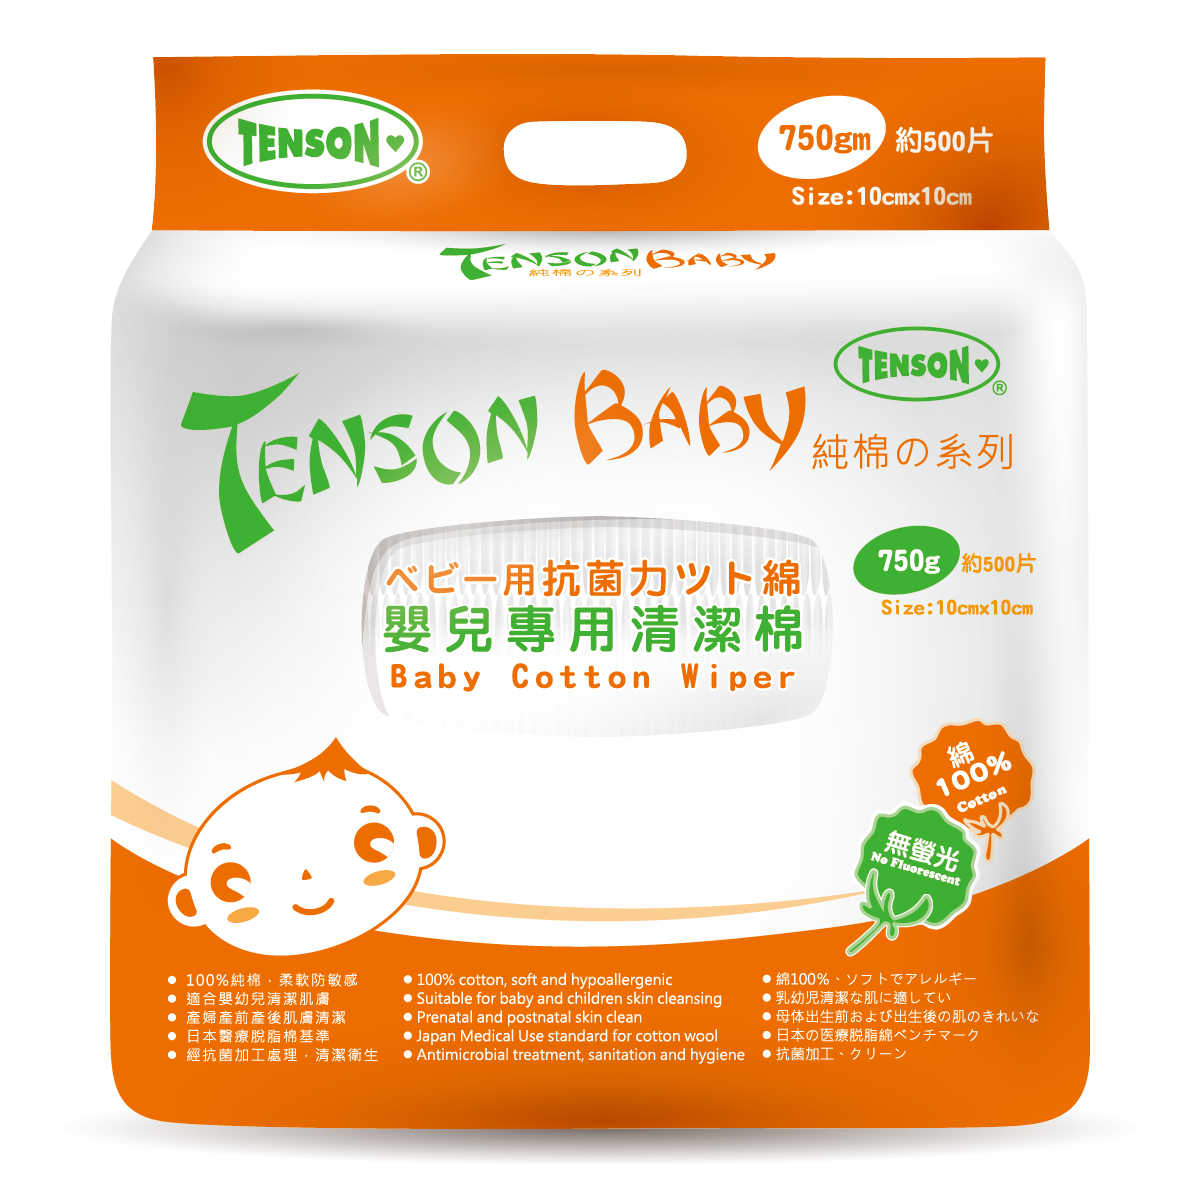 Tenson 婴儿专用清洁棉 500片装 (10x10cm)